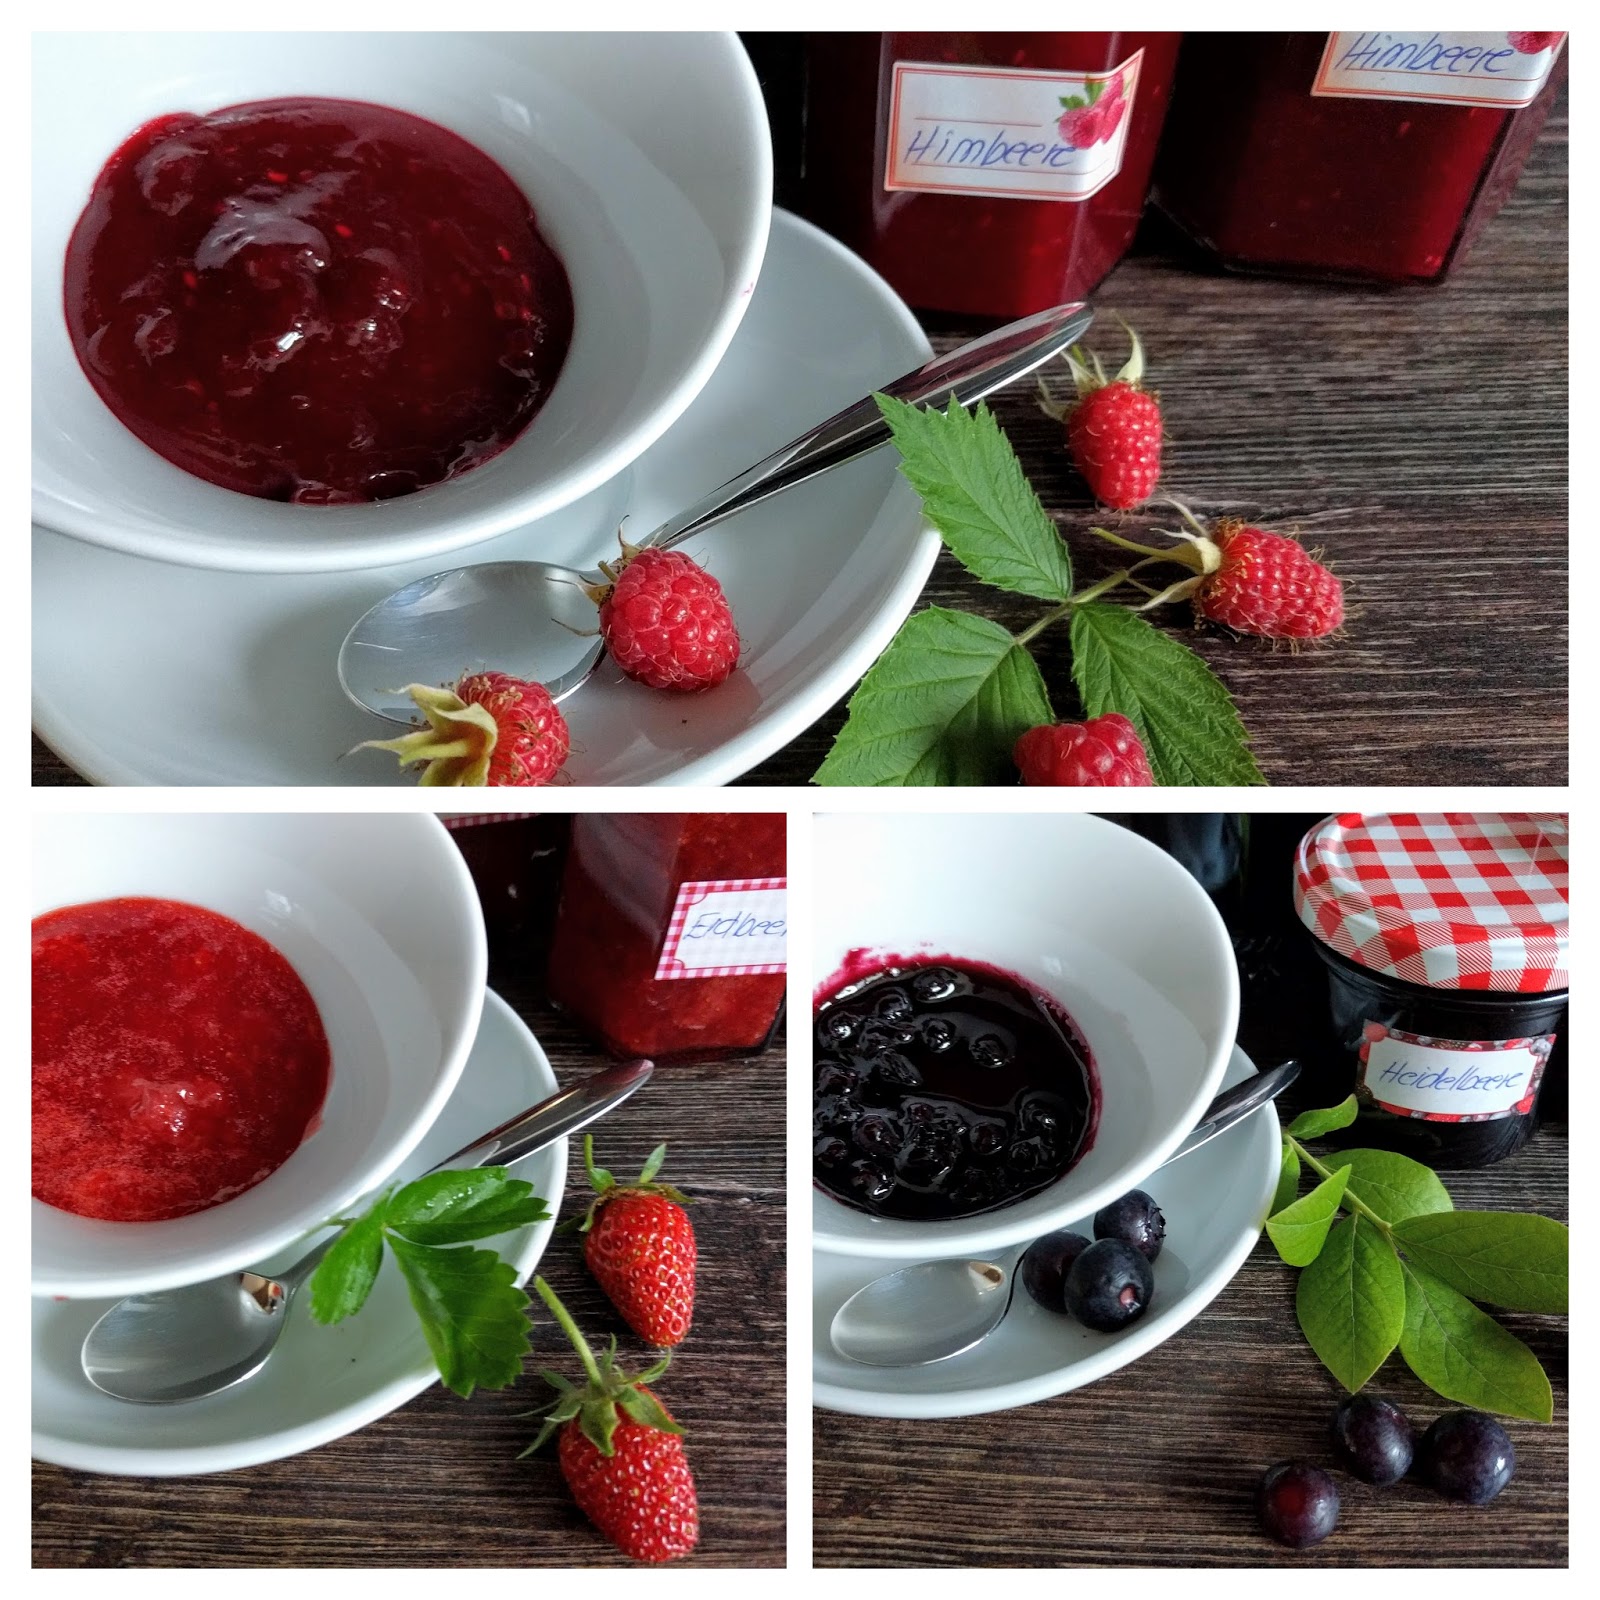 - Himbeer-, Erdbeer- und Heidelbeer-Marmelade